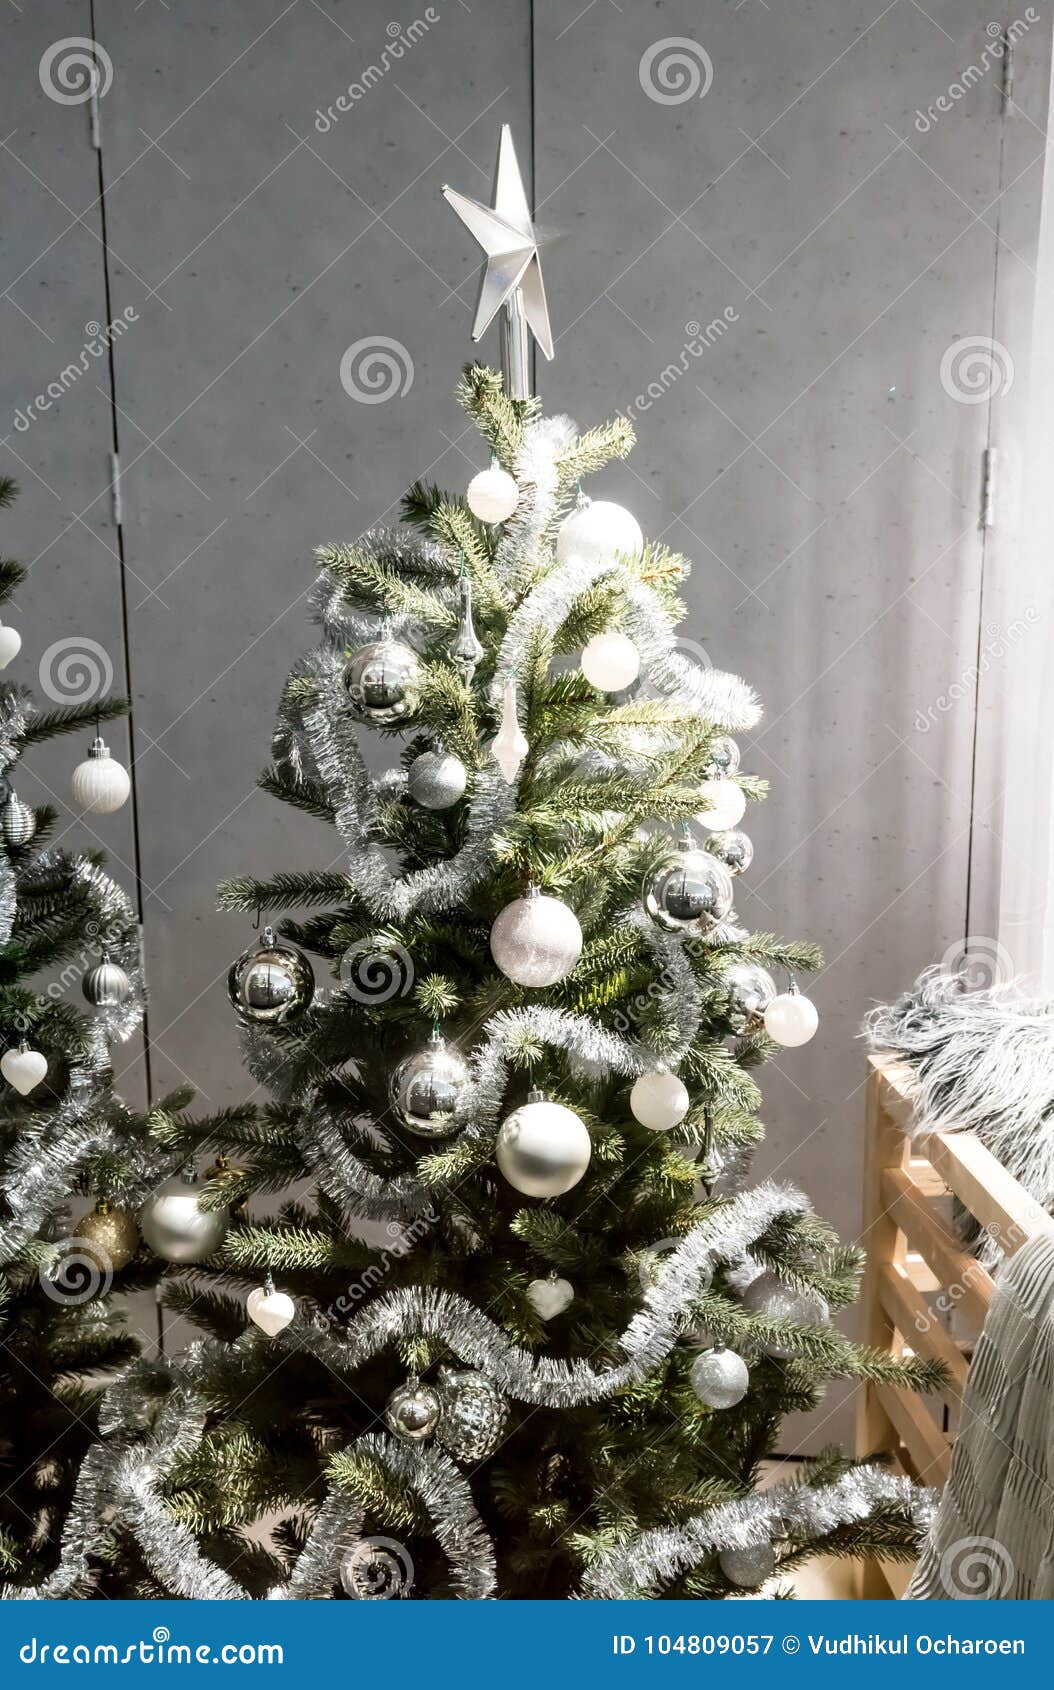 Contento Amedrentador Ocurrencia Árbol De Navidad Decorativo Blanco Y De Plata Con La Guirnalda De La Malla,  Imagen de archivo - Imagen de oropel, luces: 104809057